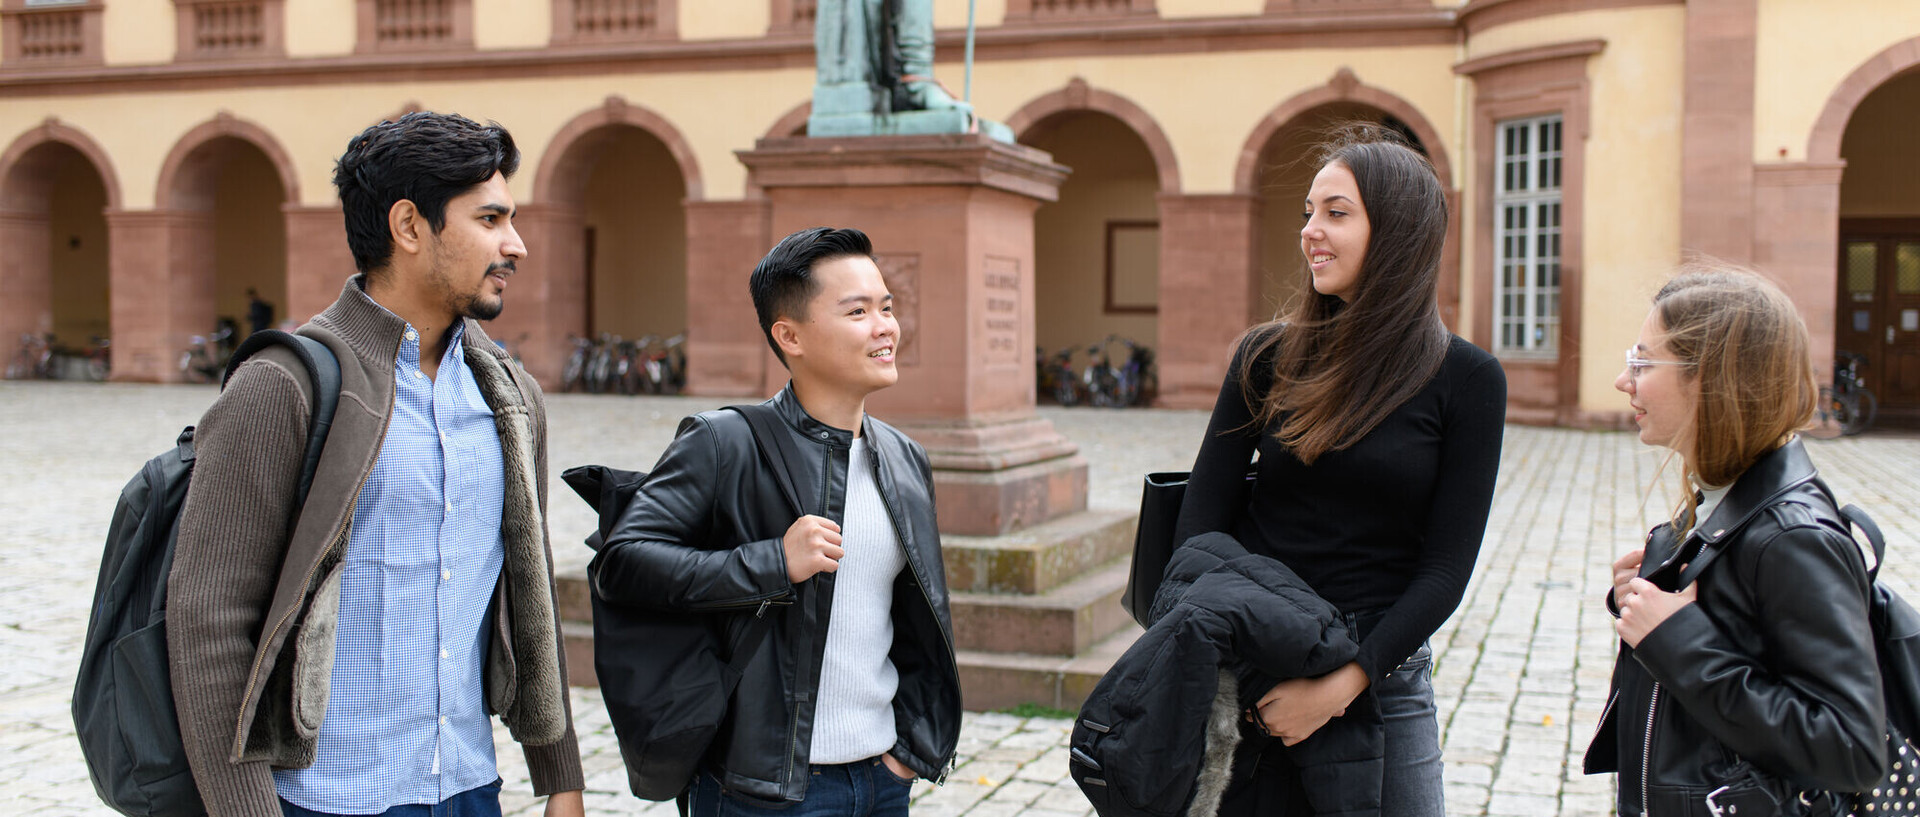 Das Bild zeigt vier Leute auf dem Ehrenhof der Universität Mannheim